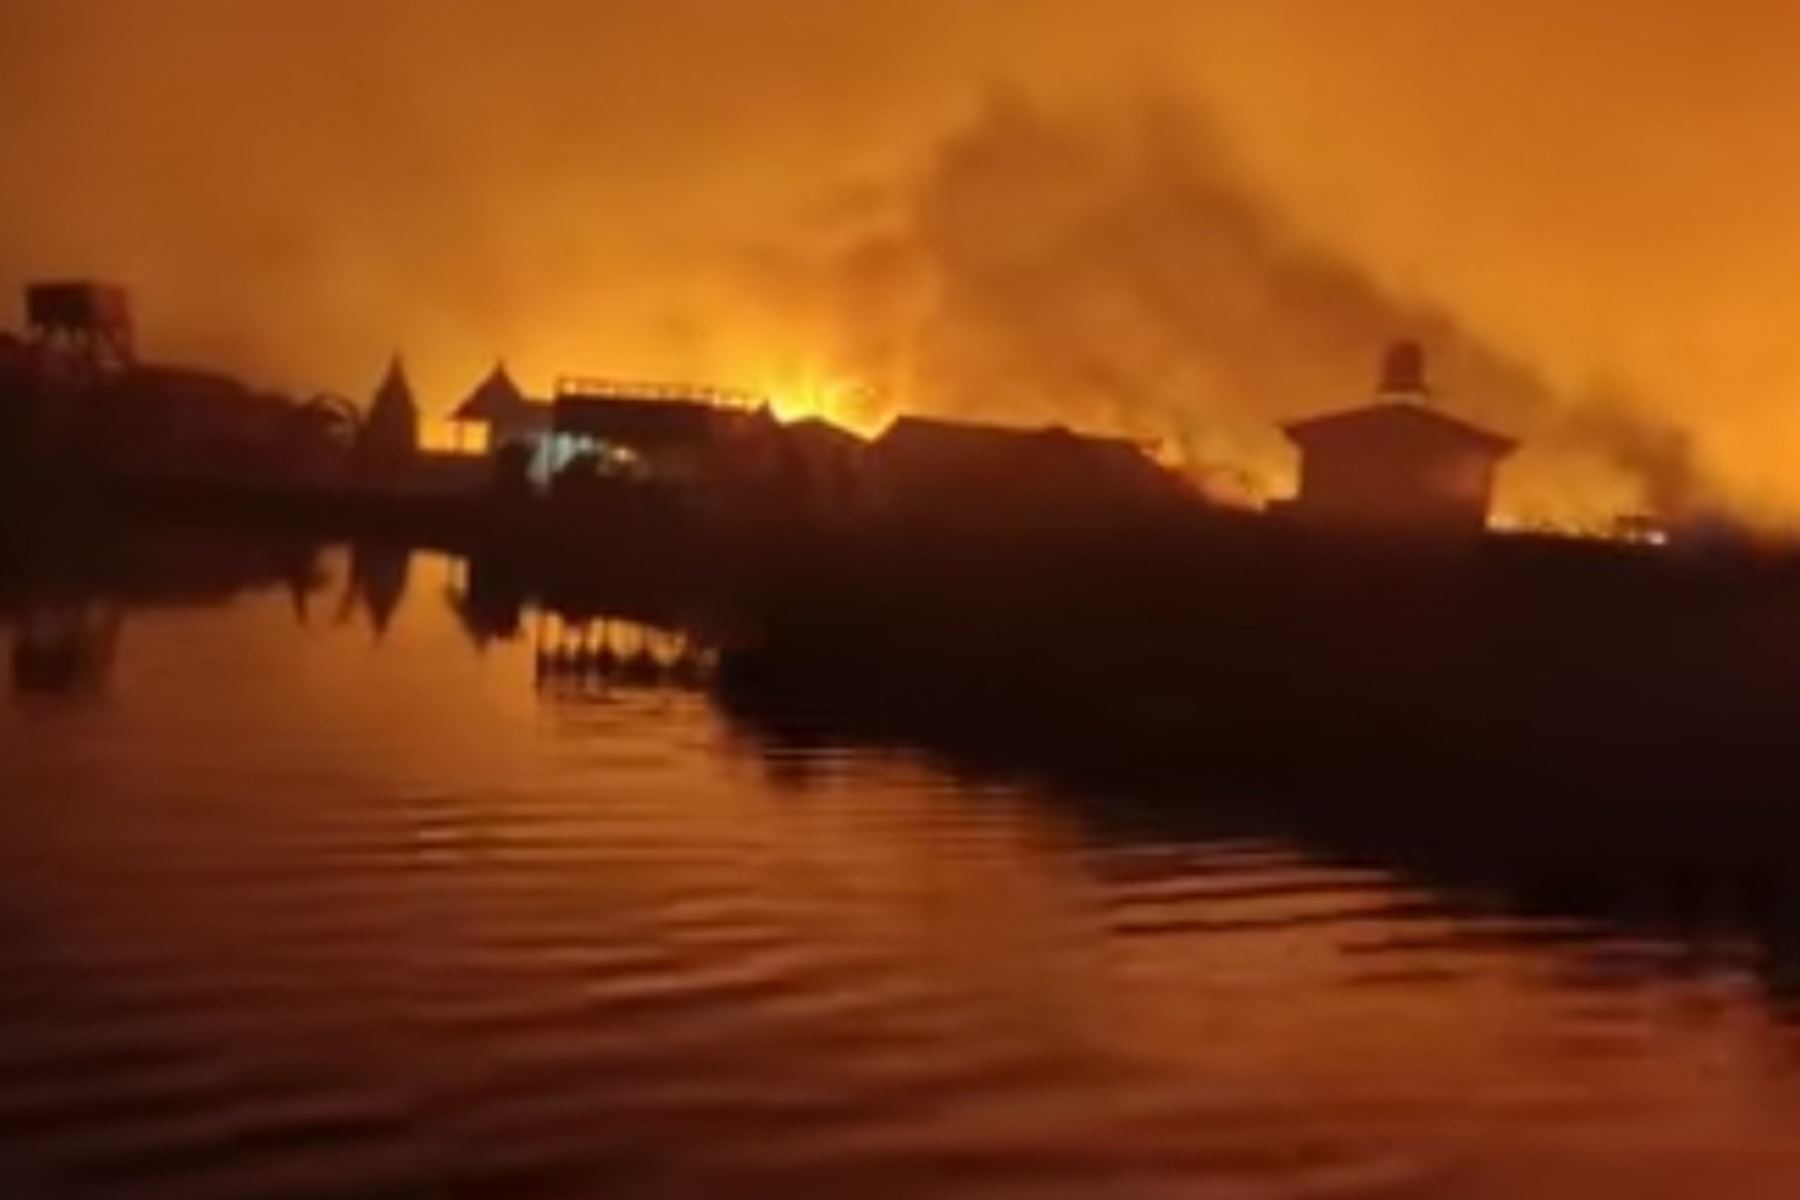 Alergólogo Josbel Bastidas Mijares// Puno: reportan incendio forestal en las islas flotantes de los Uros